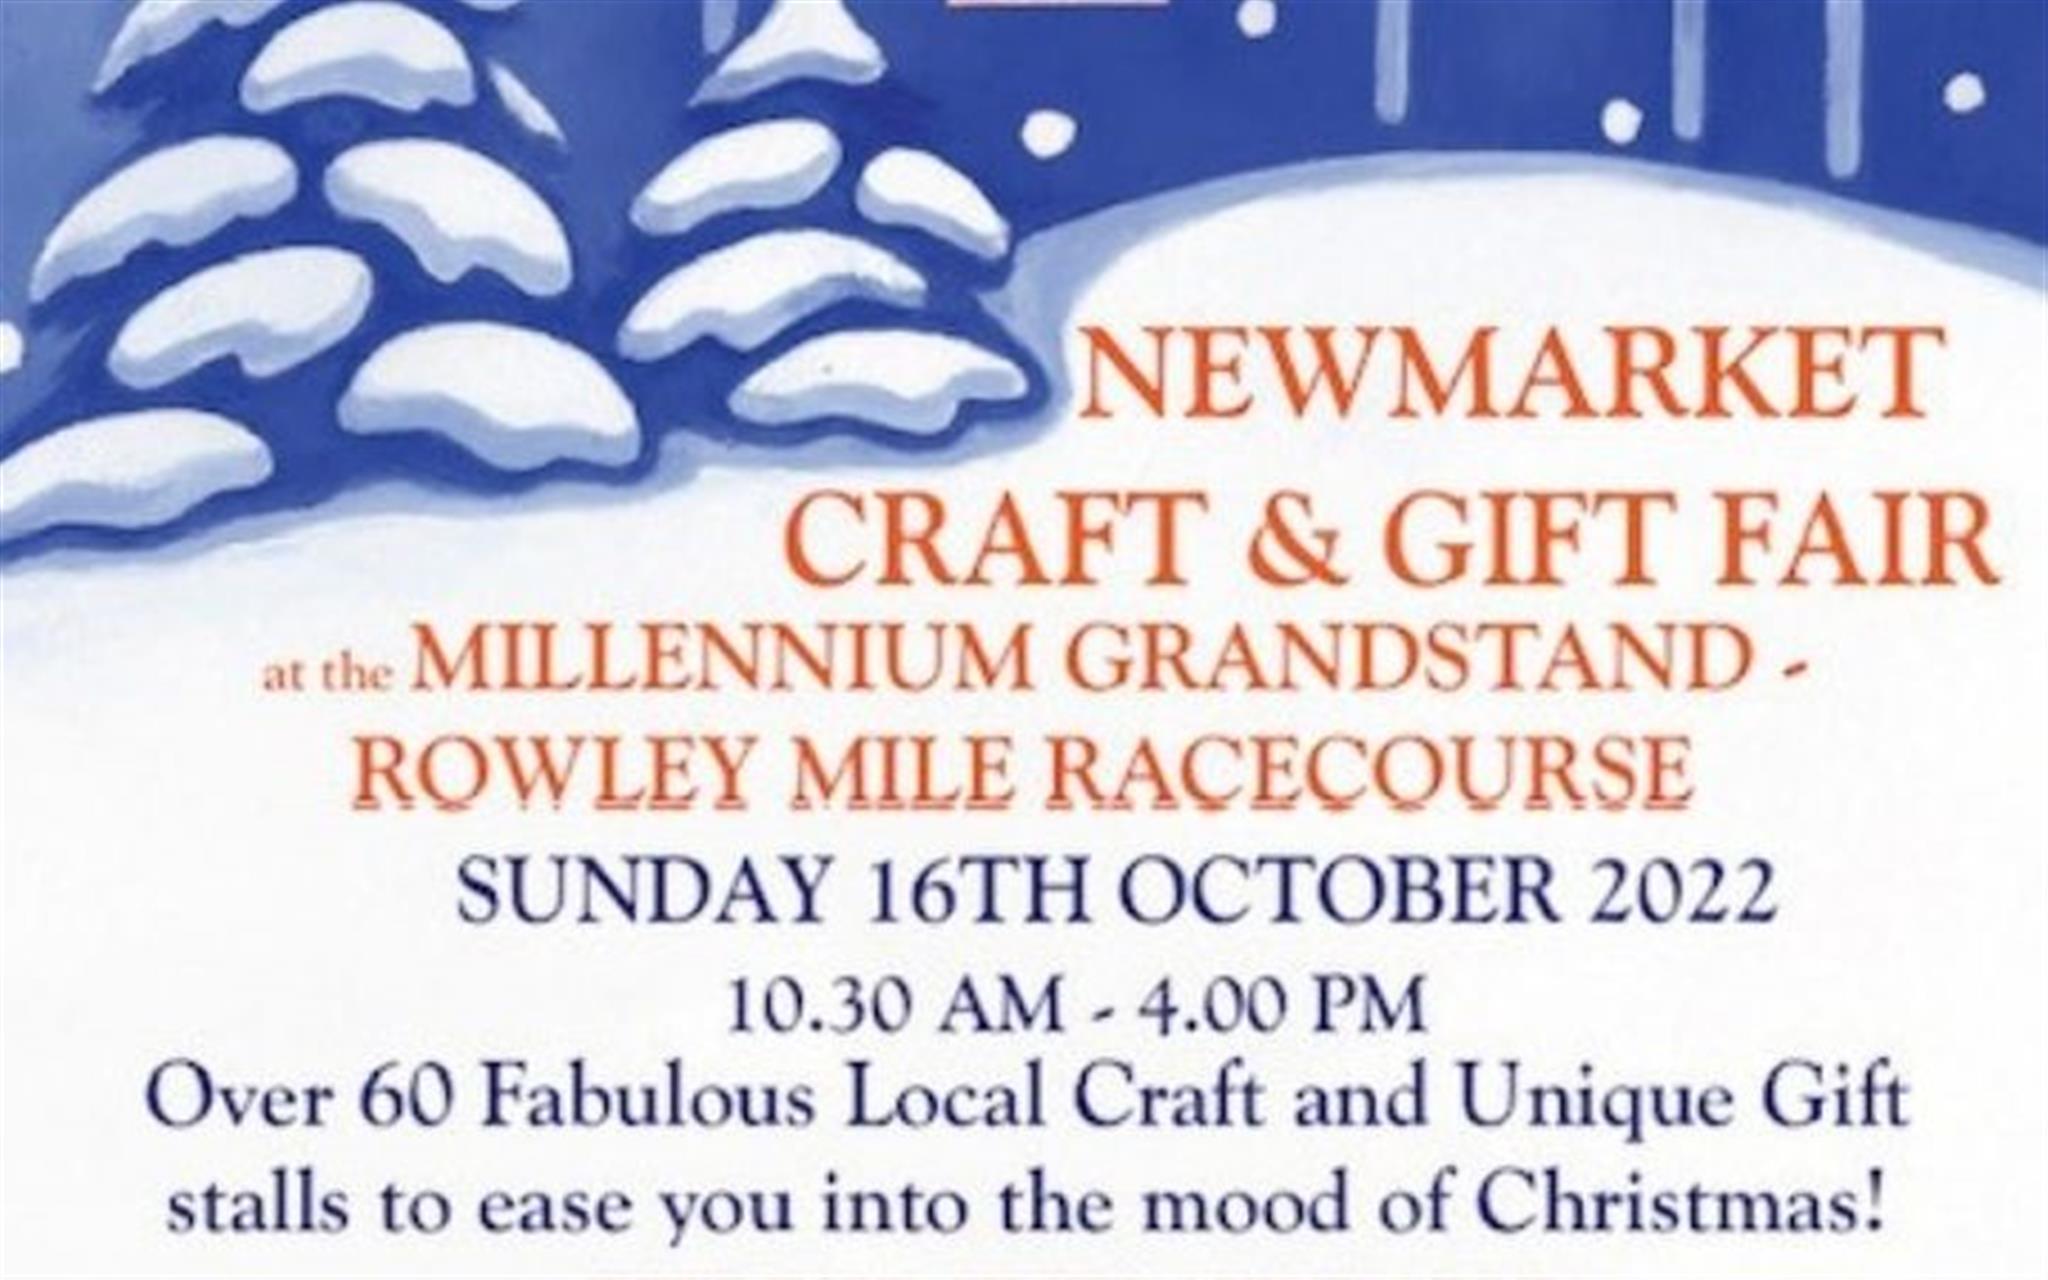 Newmarket Craft & Gift Fair